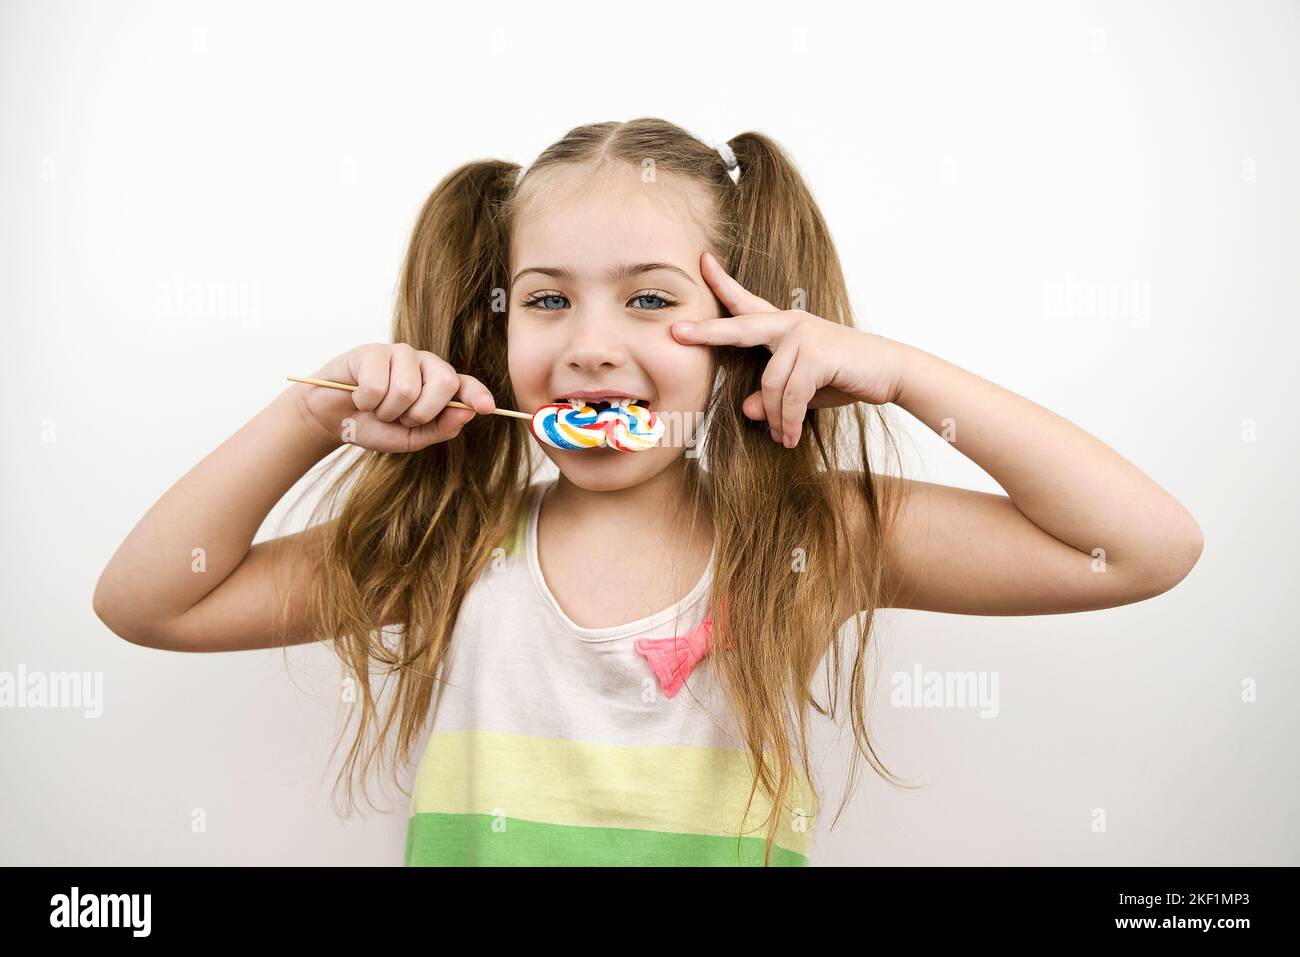 Niedliches zahnloses kleines Mädchen mit blauen Augen, das Lollipop isst. Isoliert auf Weiß Stockfoto